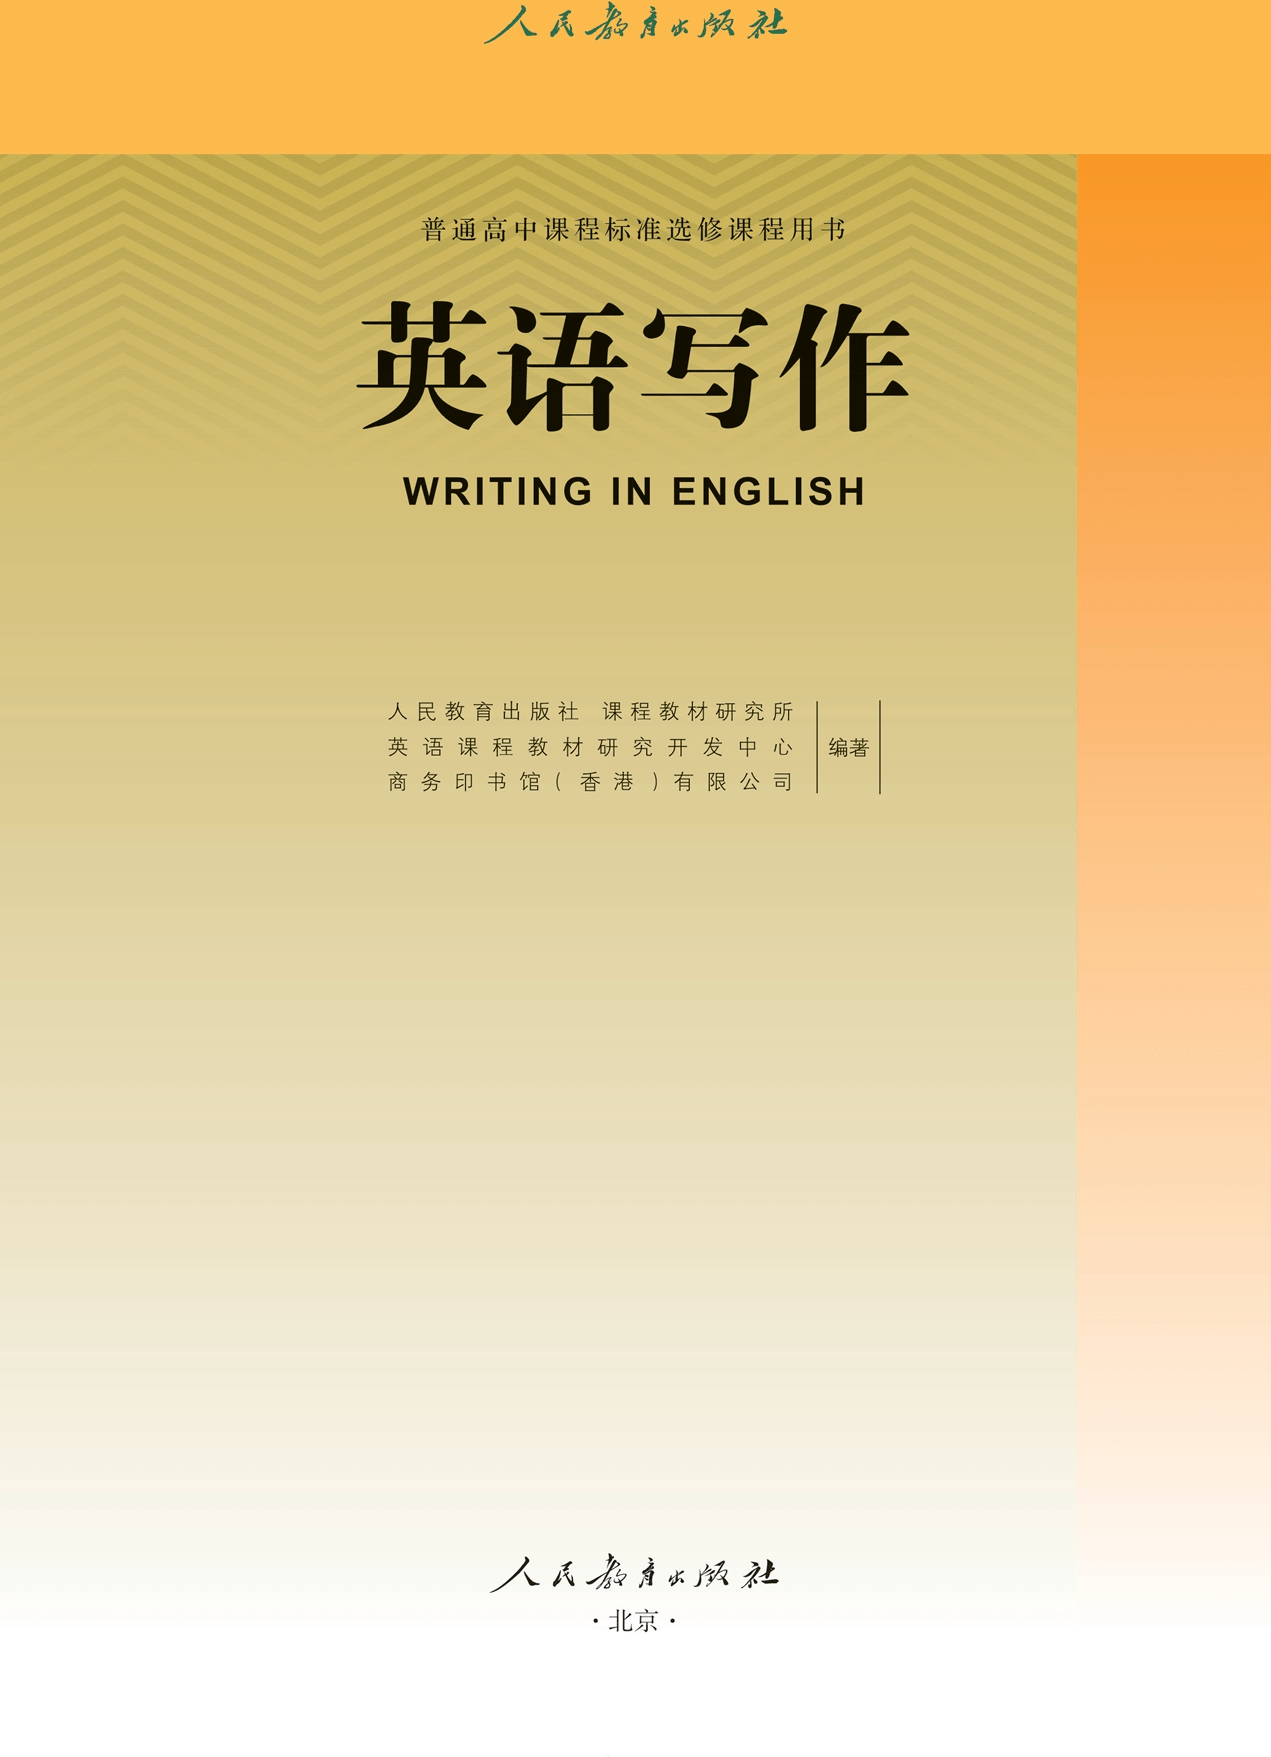 2023高中英语选修课程用书《英语写作》电子课本PDF高清版_手机搜狐网